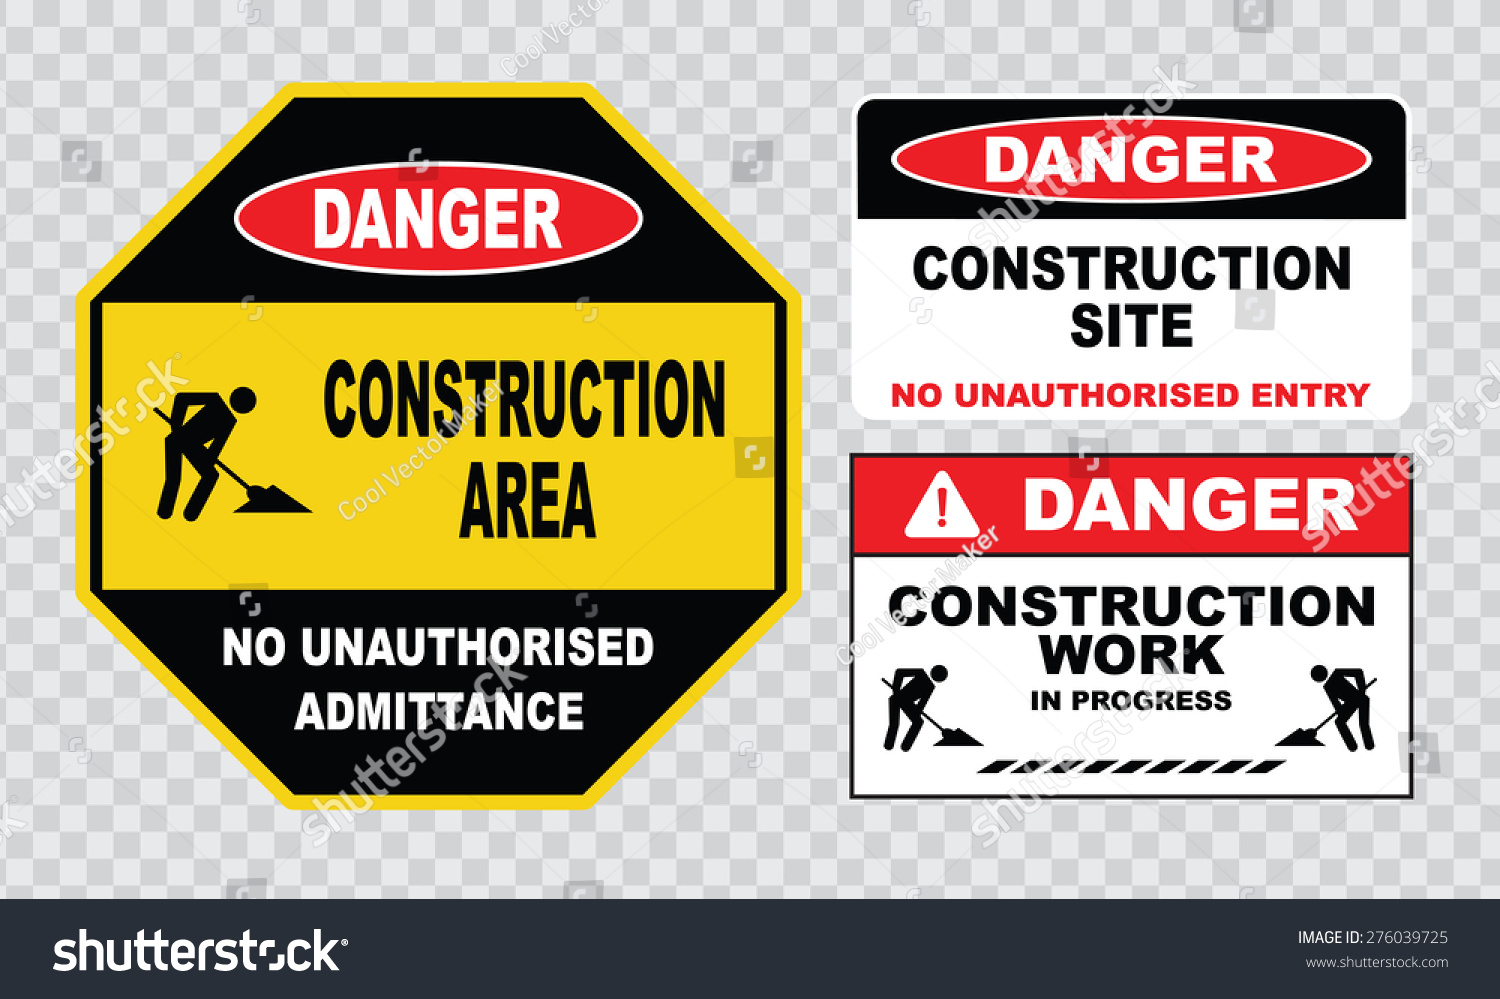 Danger Construction in progress do not enter sign 